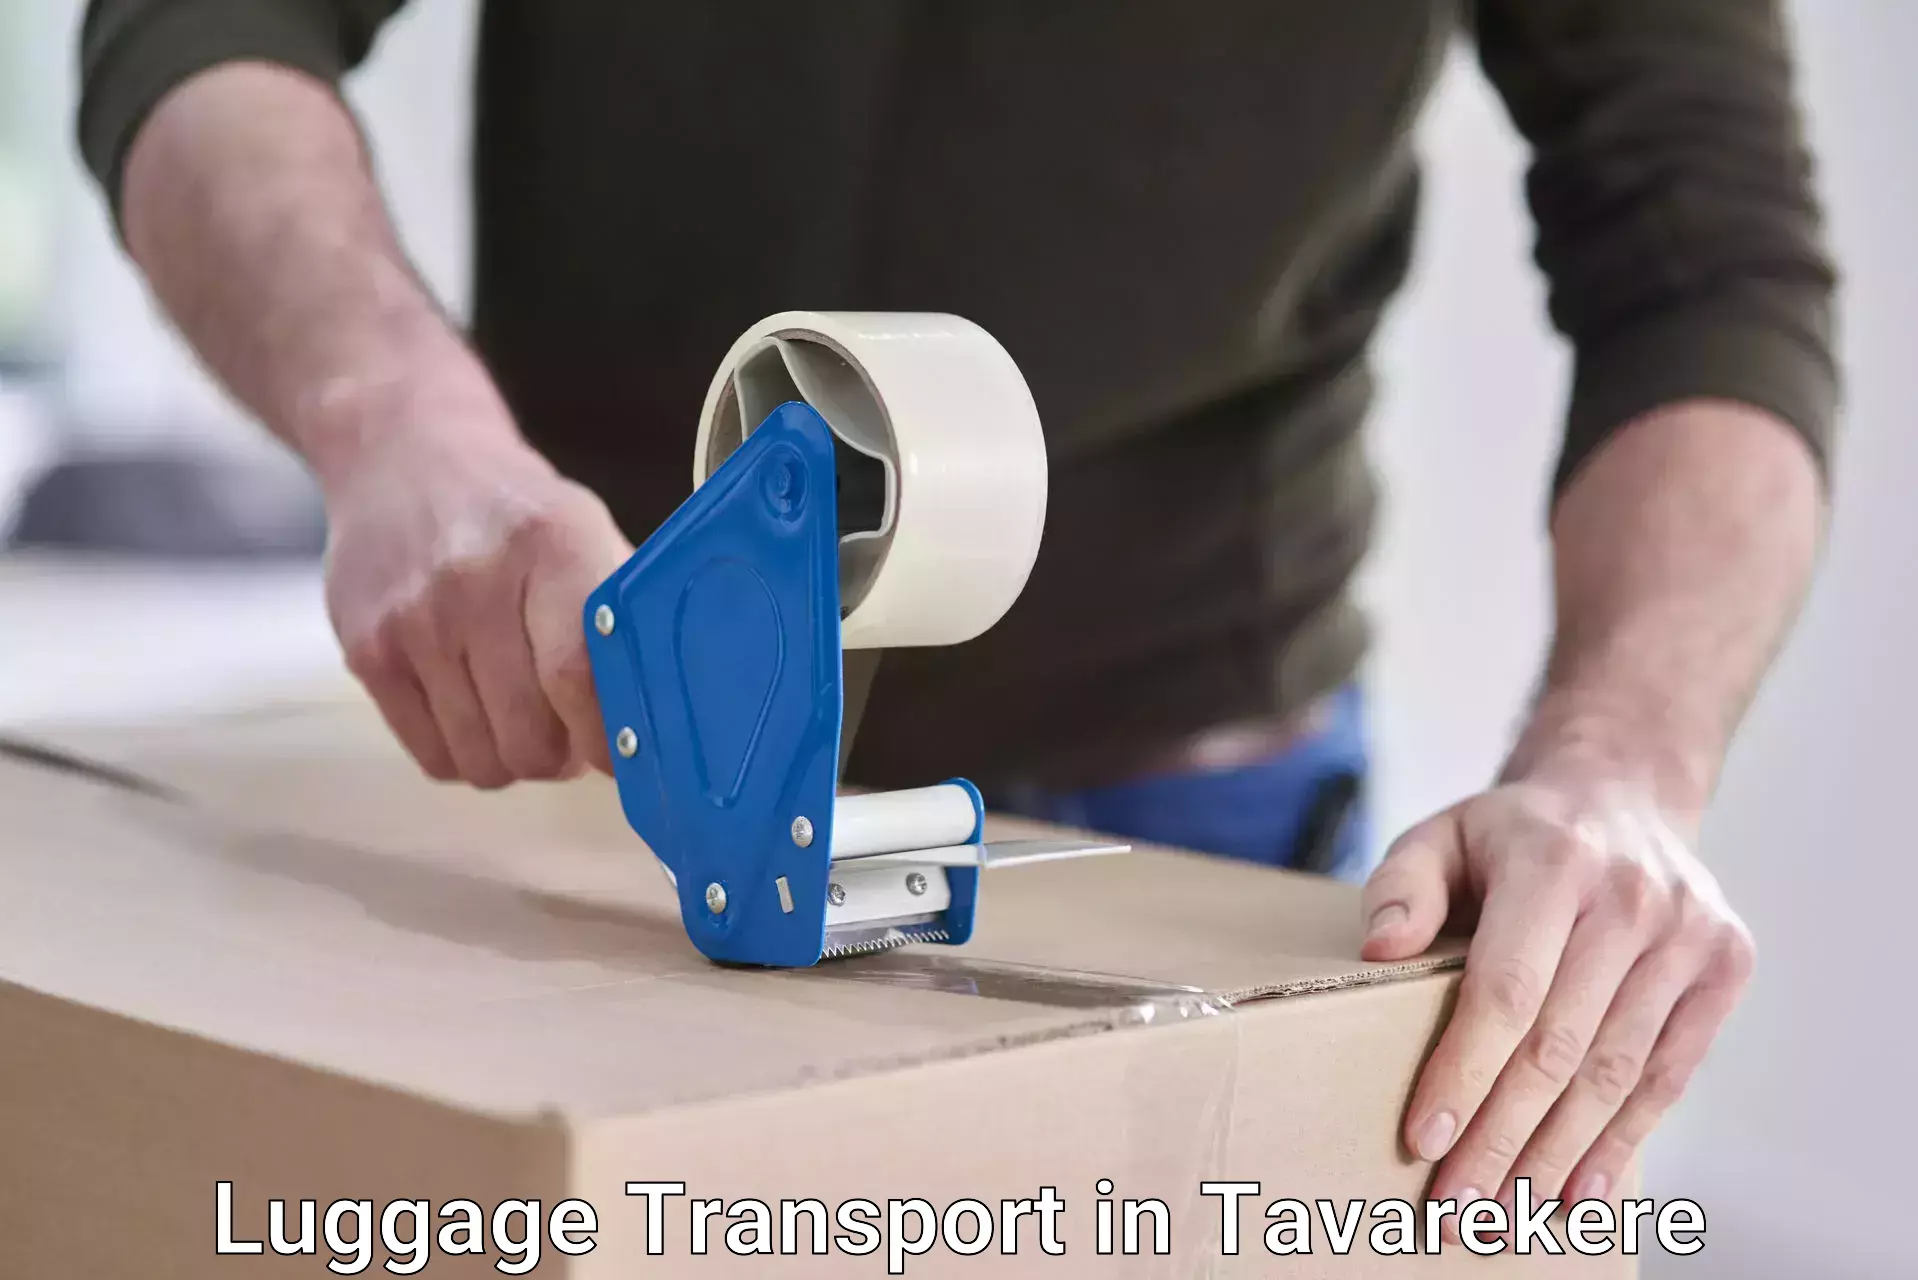 Luggage transport consultancy in Tavarekere